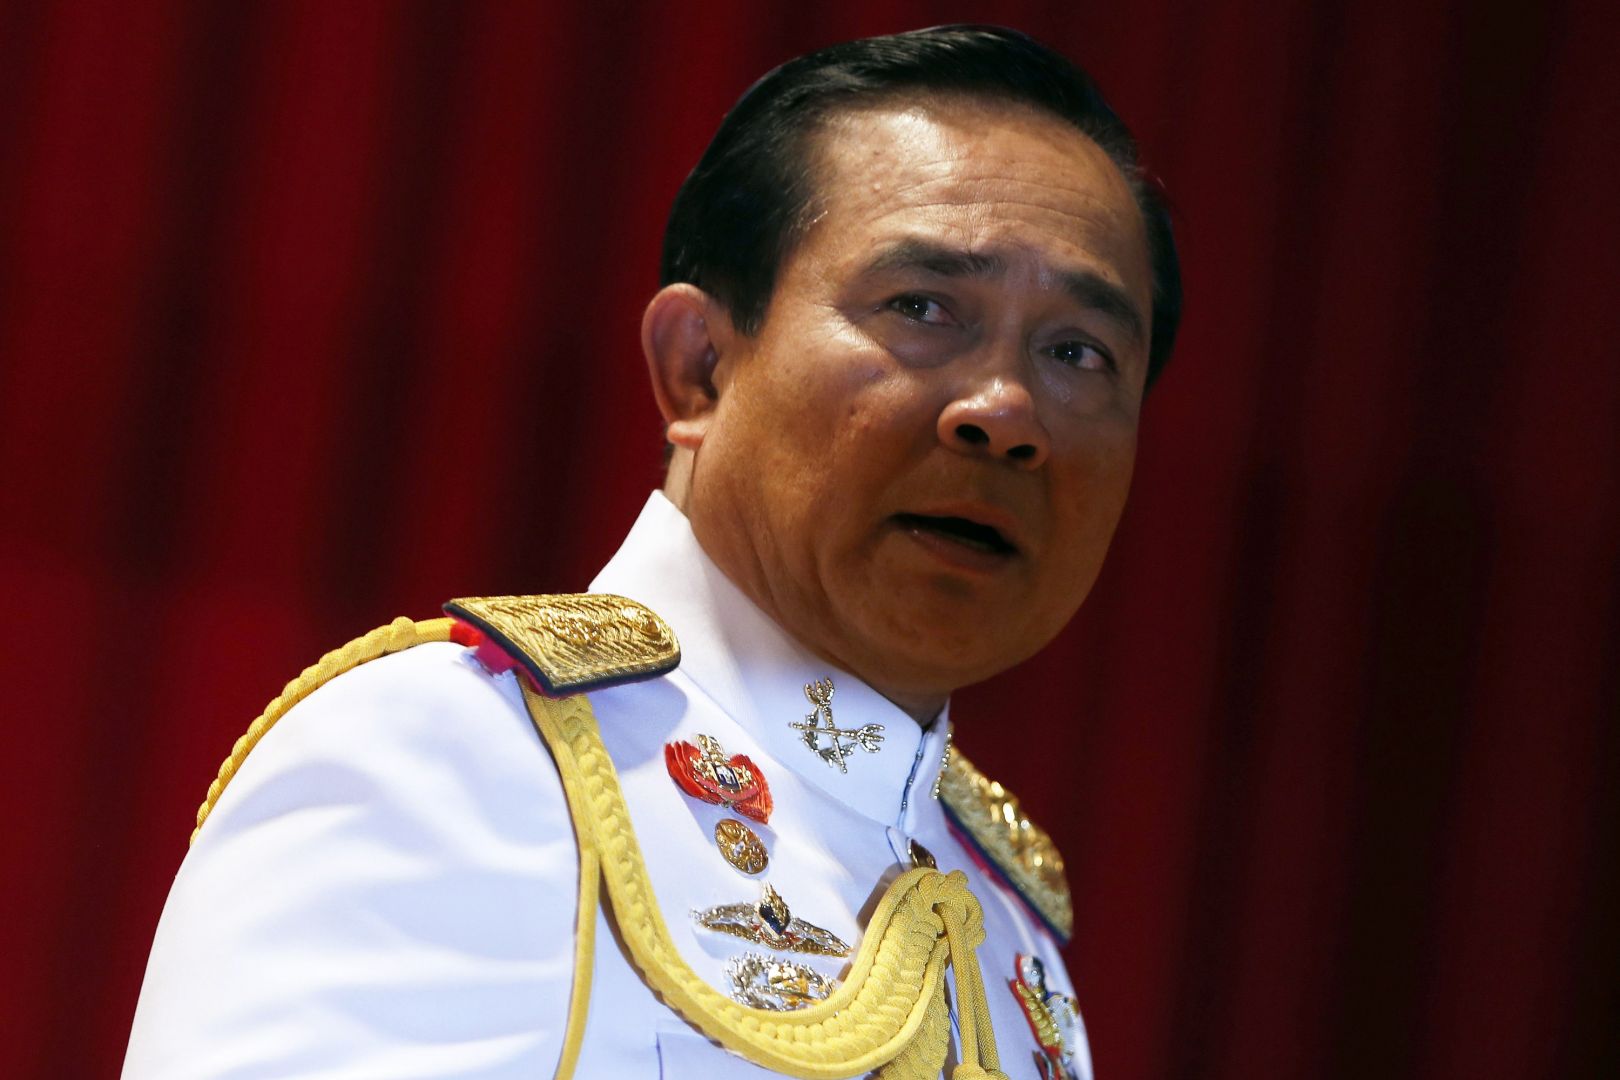 Thái Lan bỏ thiết quân luật, củng cố quyền lực quân đội - 1